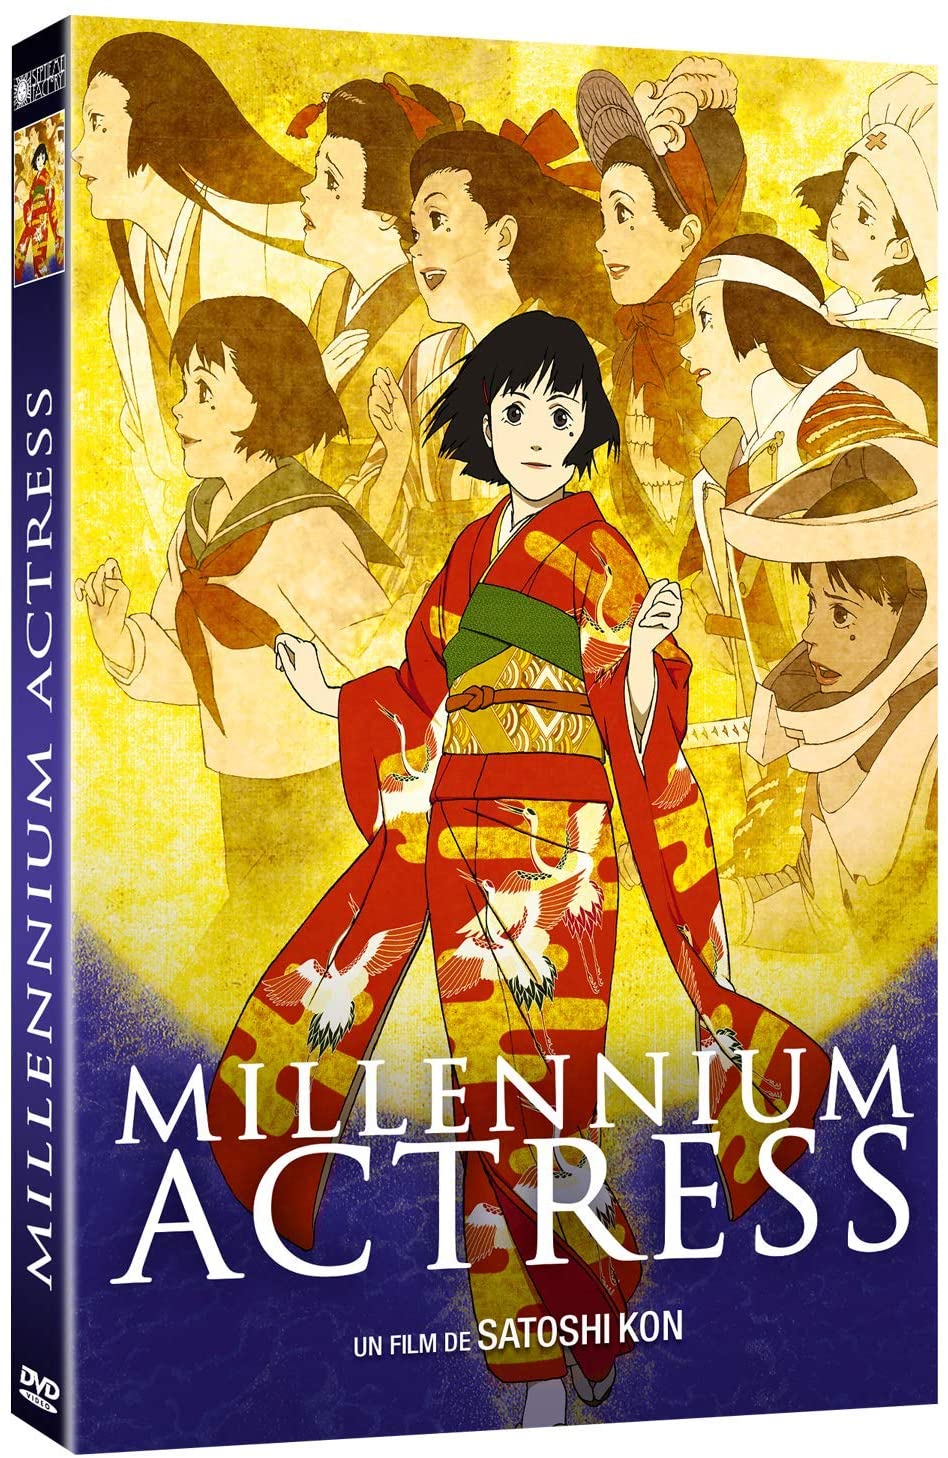 DVD du film Millennium Actress publié chez Septième Factory